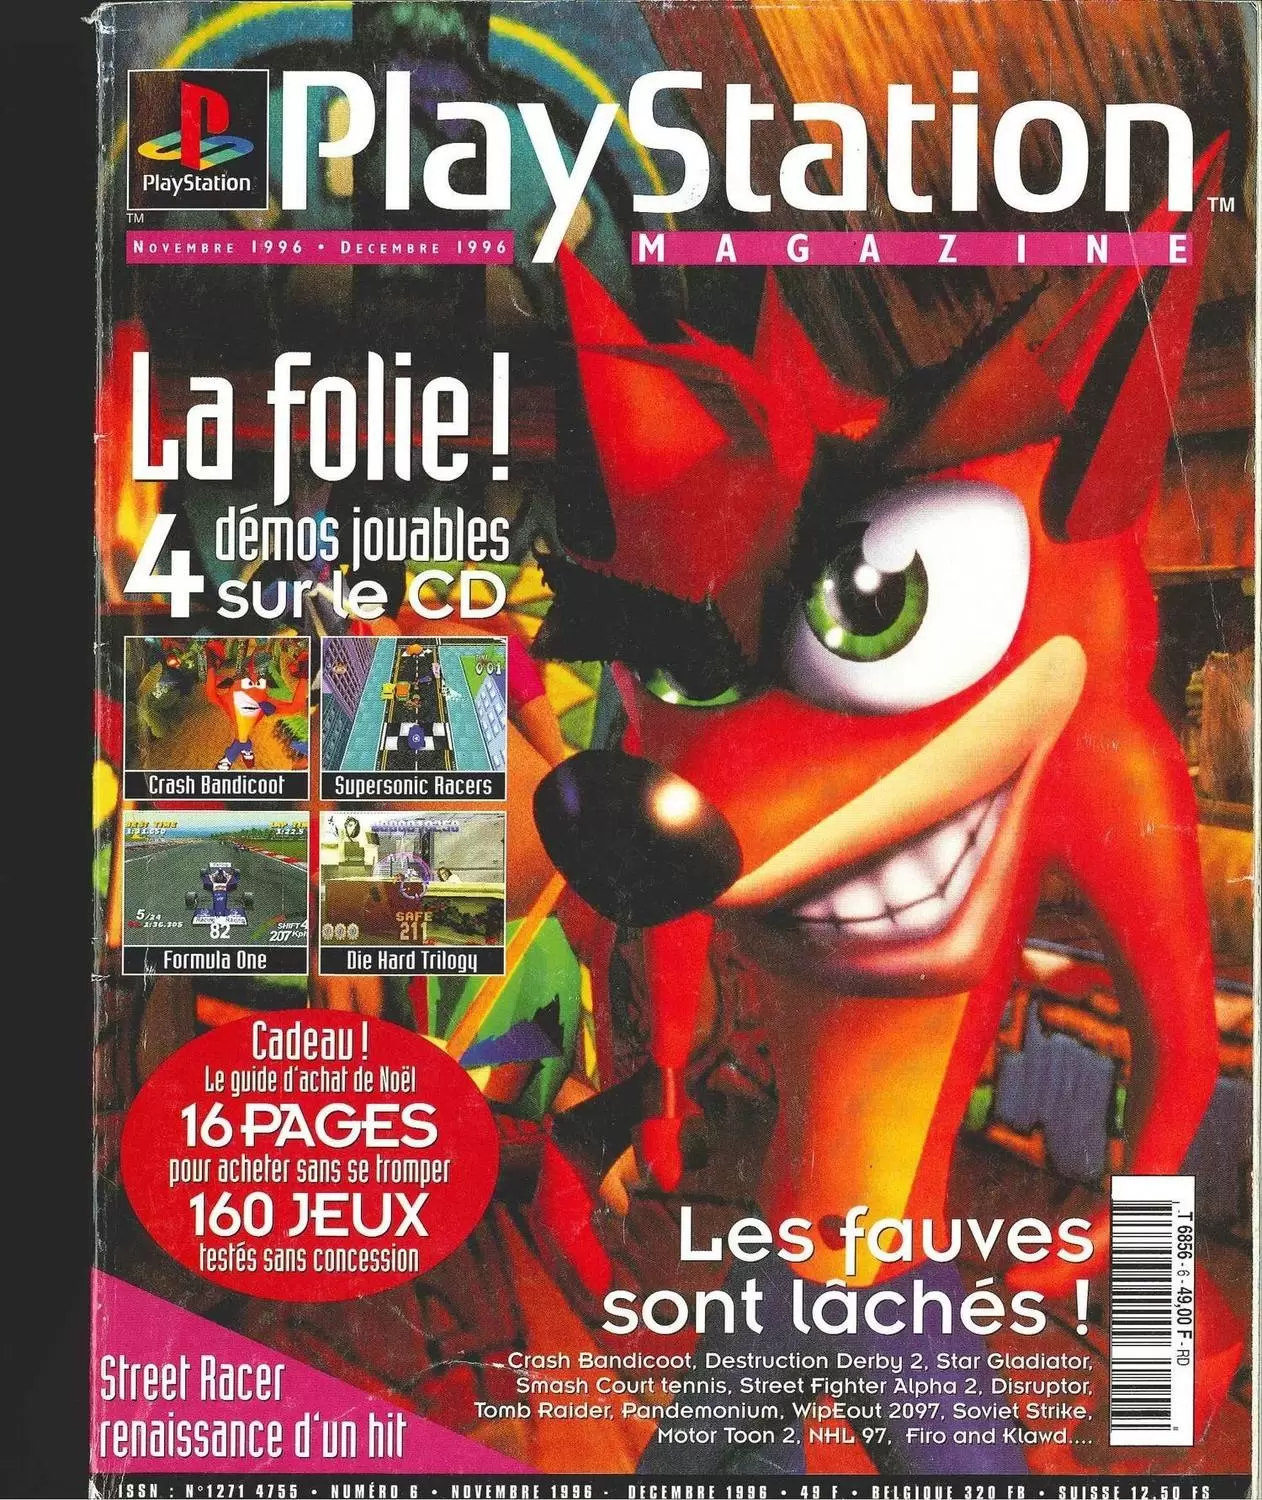 Playstation Magazine - Playstation Magazine #06